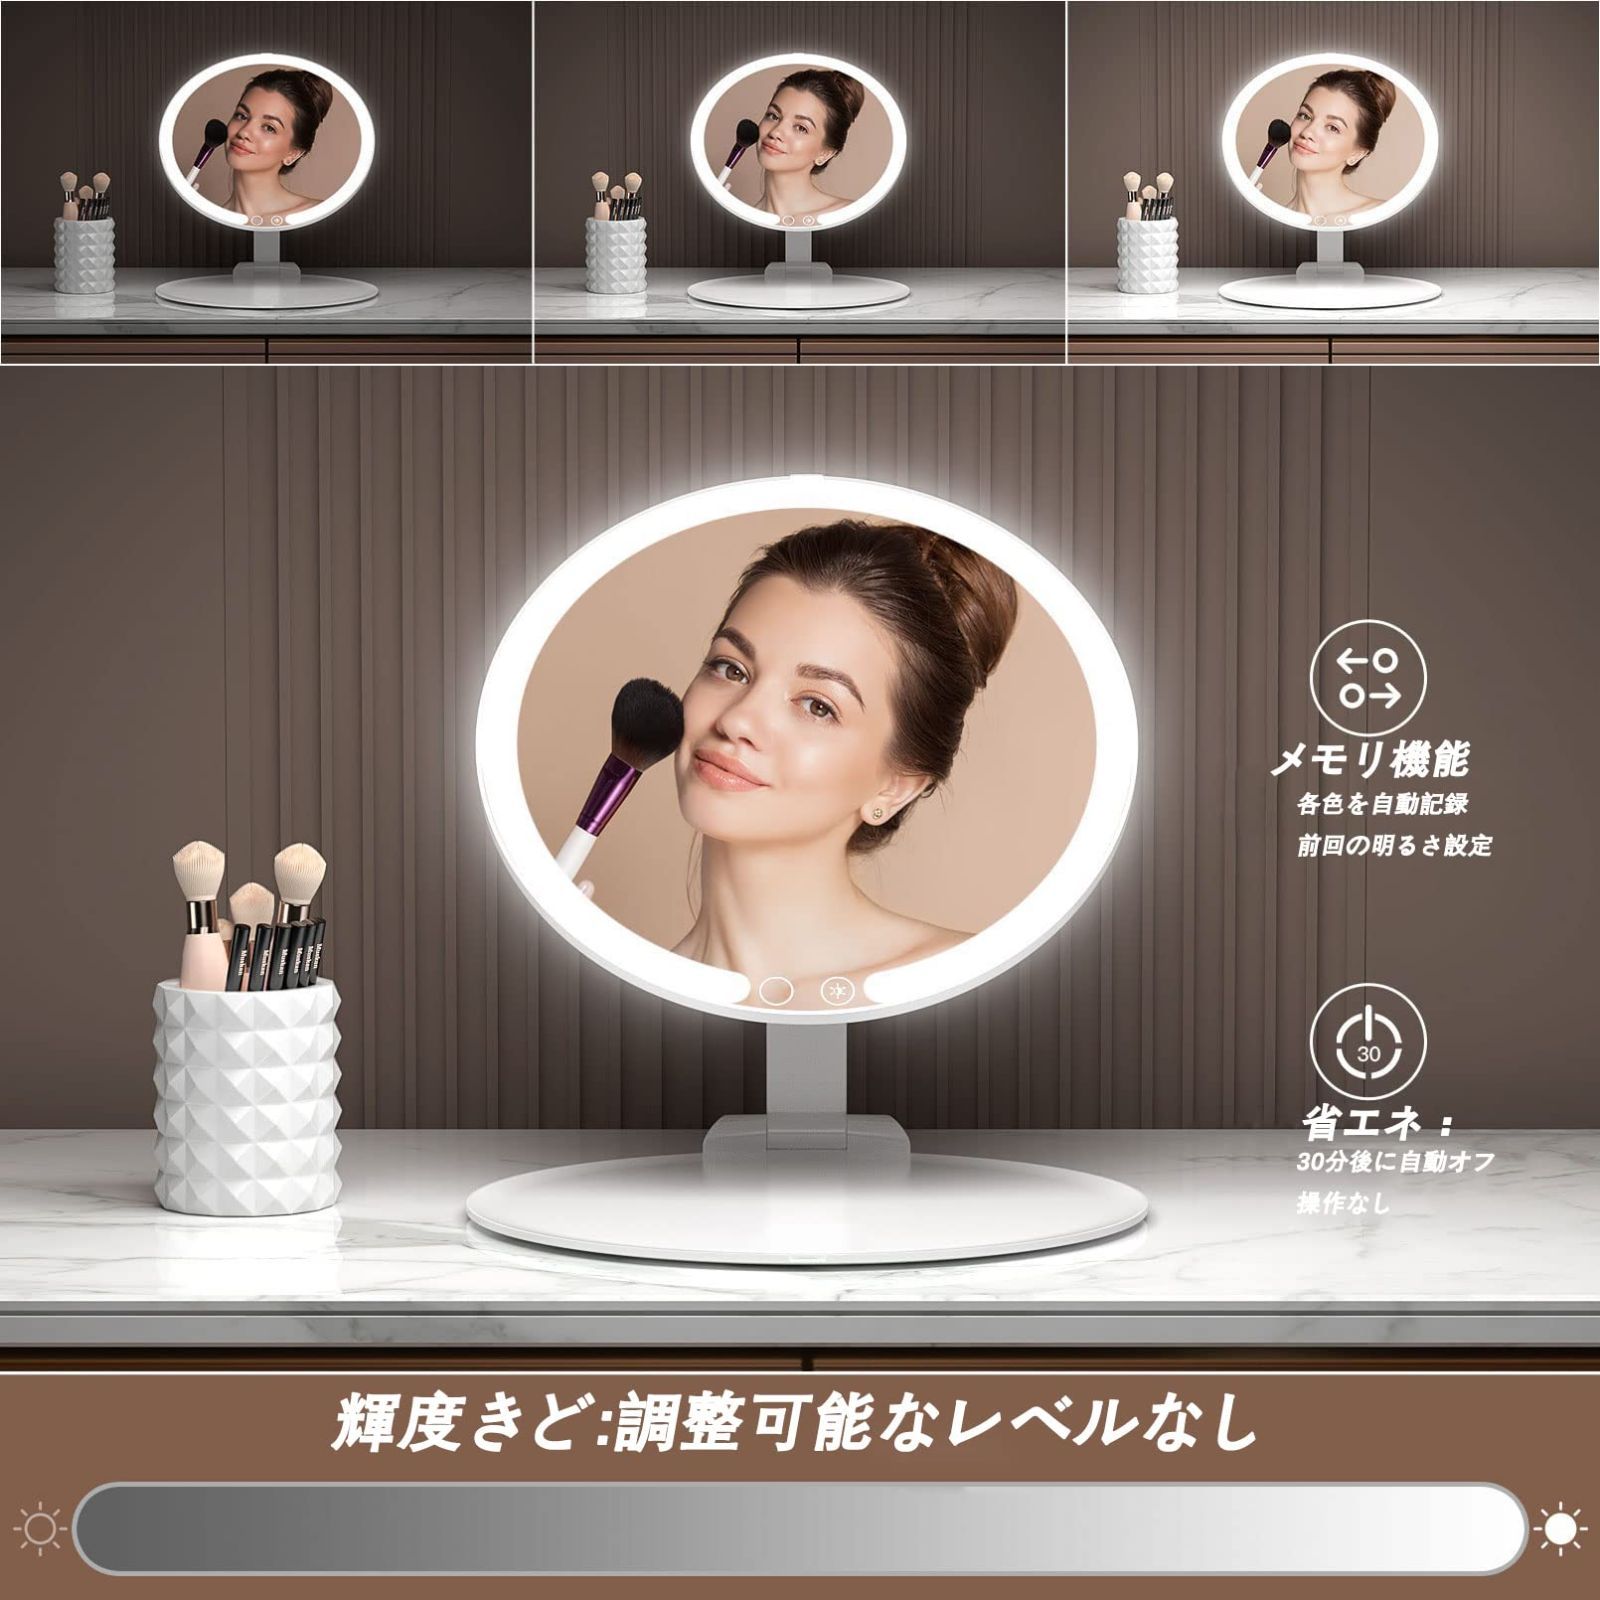 新着商品MILEDUO 女優ミラー 旅行用折りたたみ式ライト付きメイクアップキット/セット